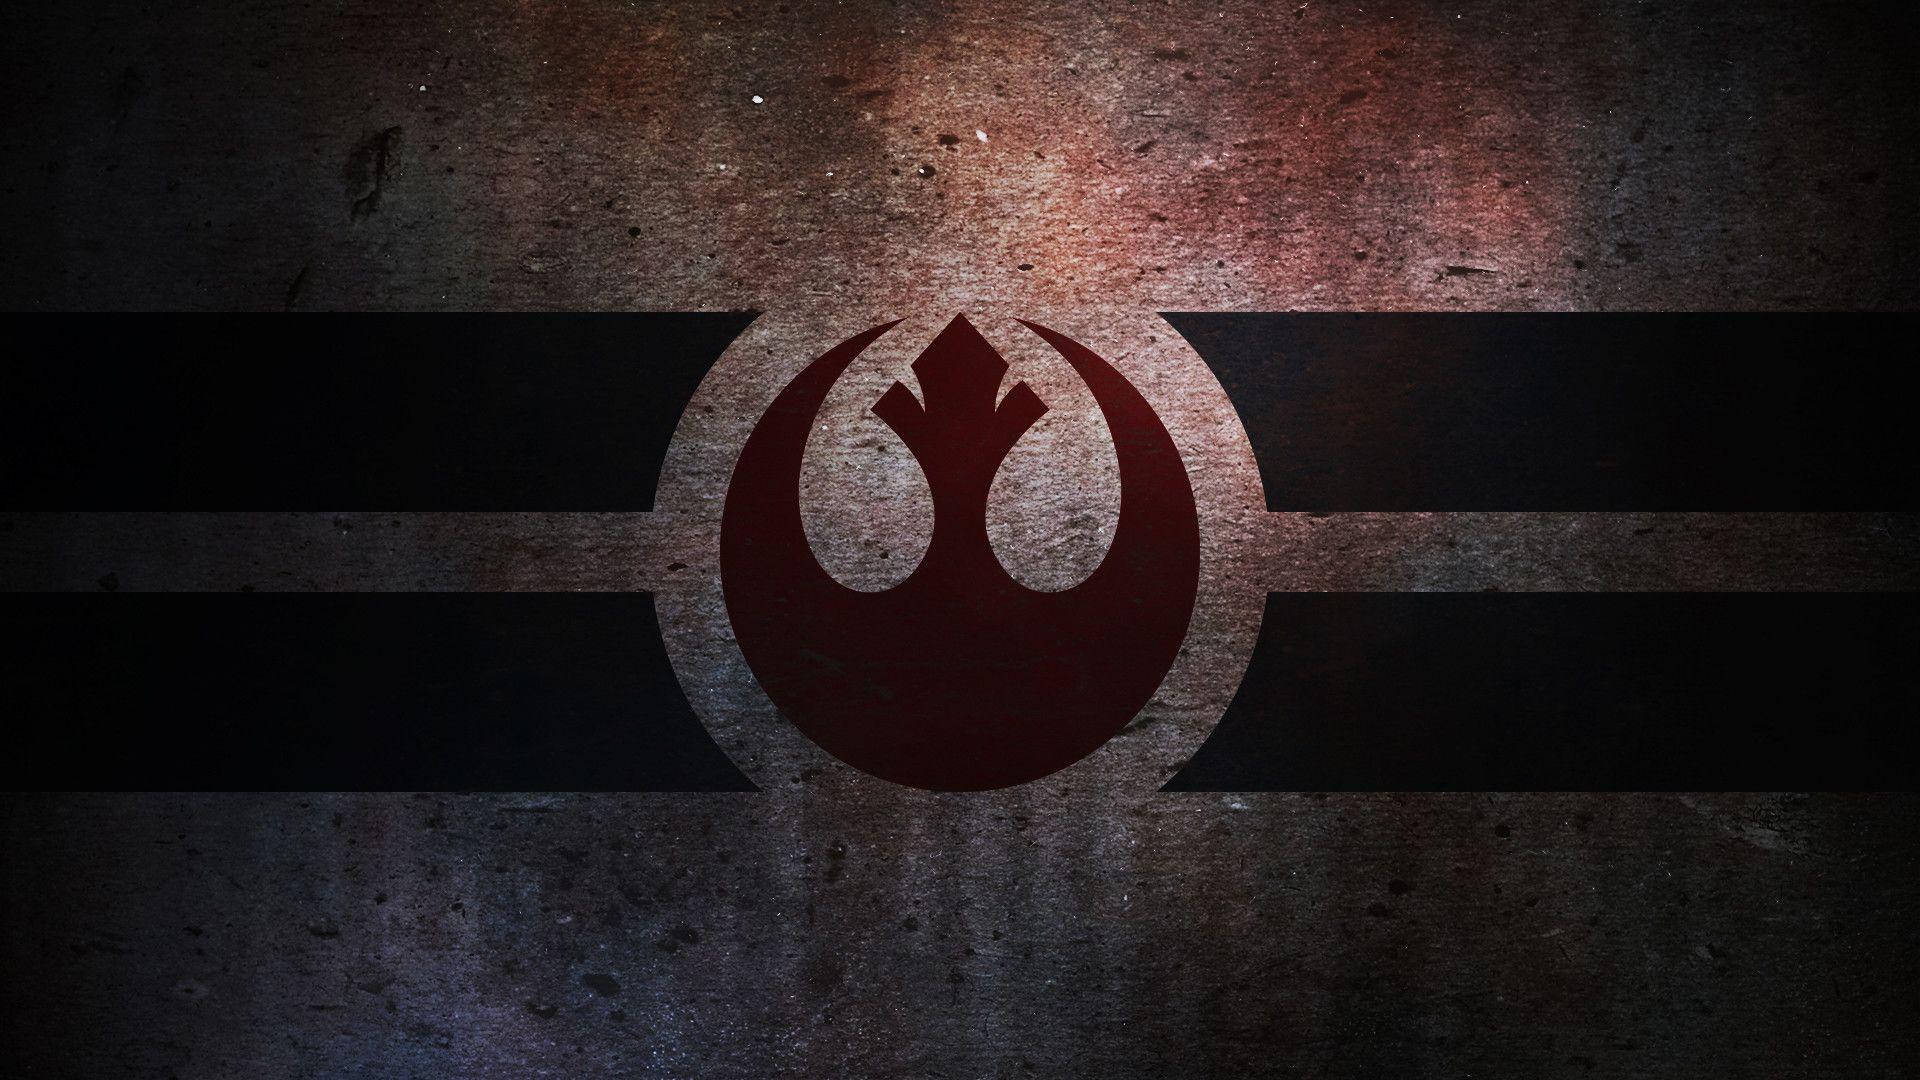 Star Wars Jedi Wallpaper